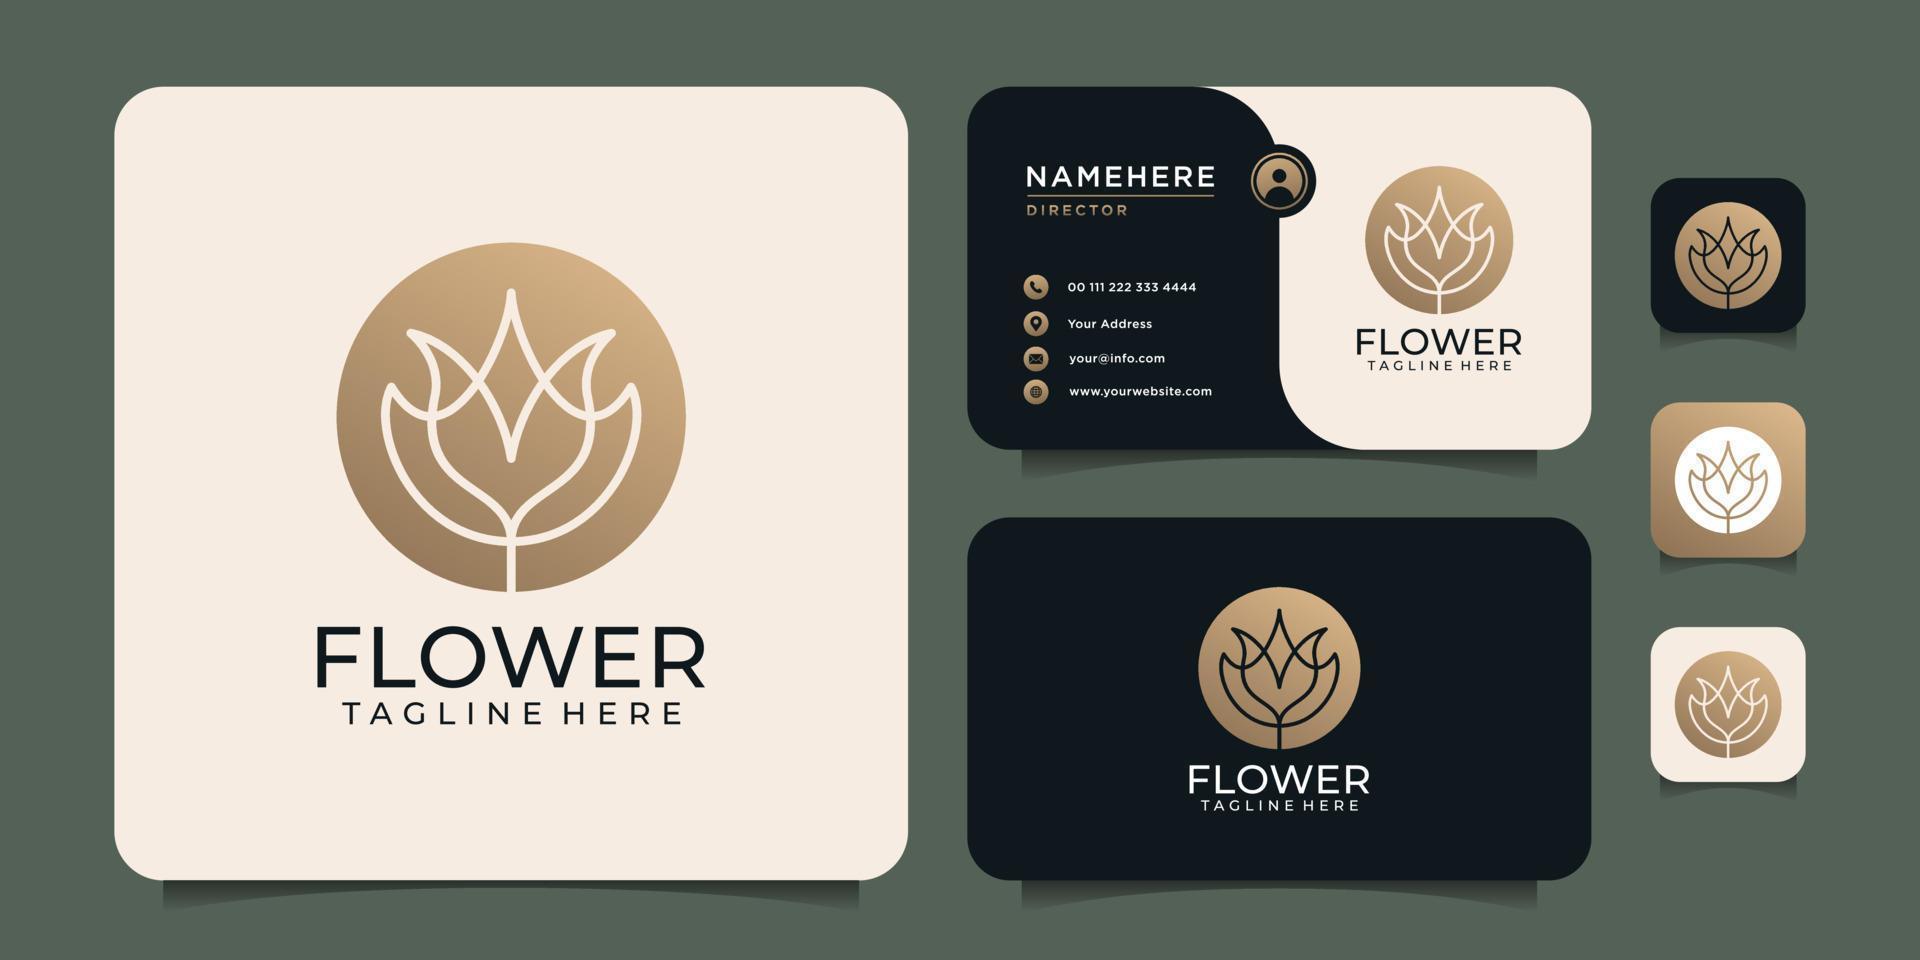 élégance féminine lotus hotel resort fleur logo design avec carte de visite vecteur